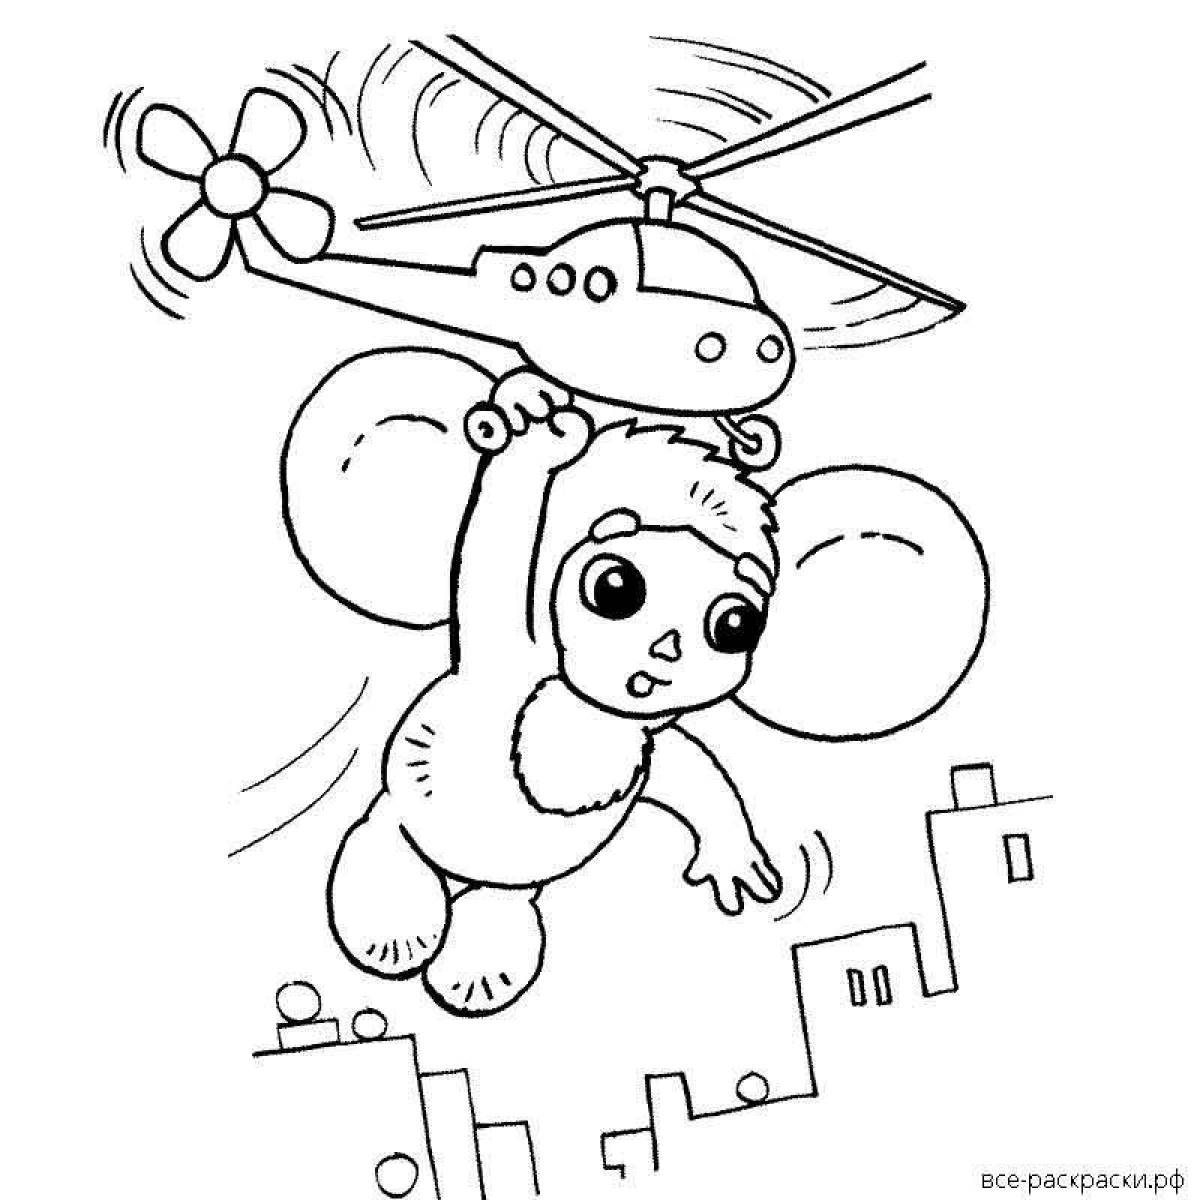 Fun coloring Cheburashka